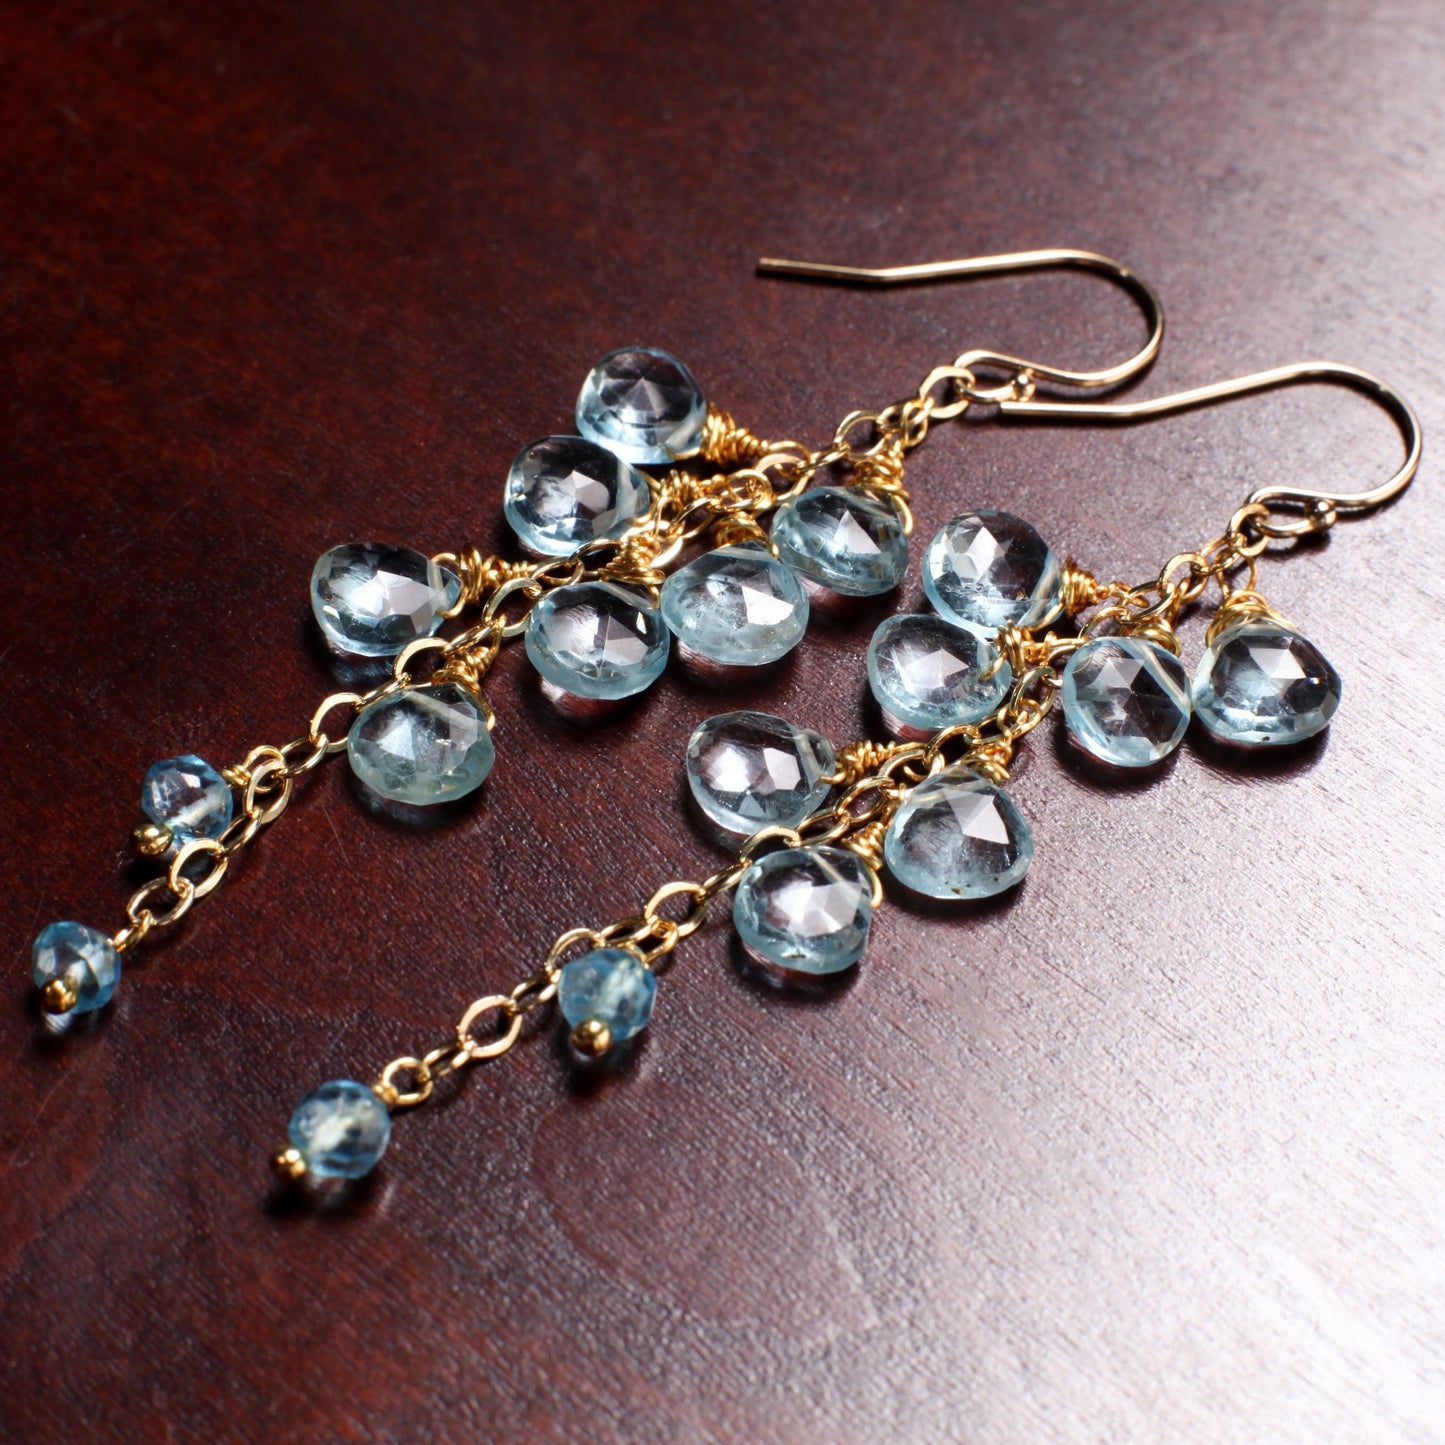 Genuine Swiss Blue Topaz 6-7mm Faceted heart drop Cascade Earrings,14K Gold Filled Wire Wrapped Teardrop Earrings, December Birthstone,Gift